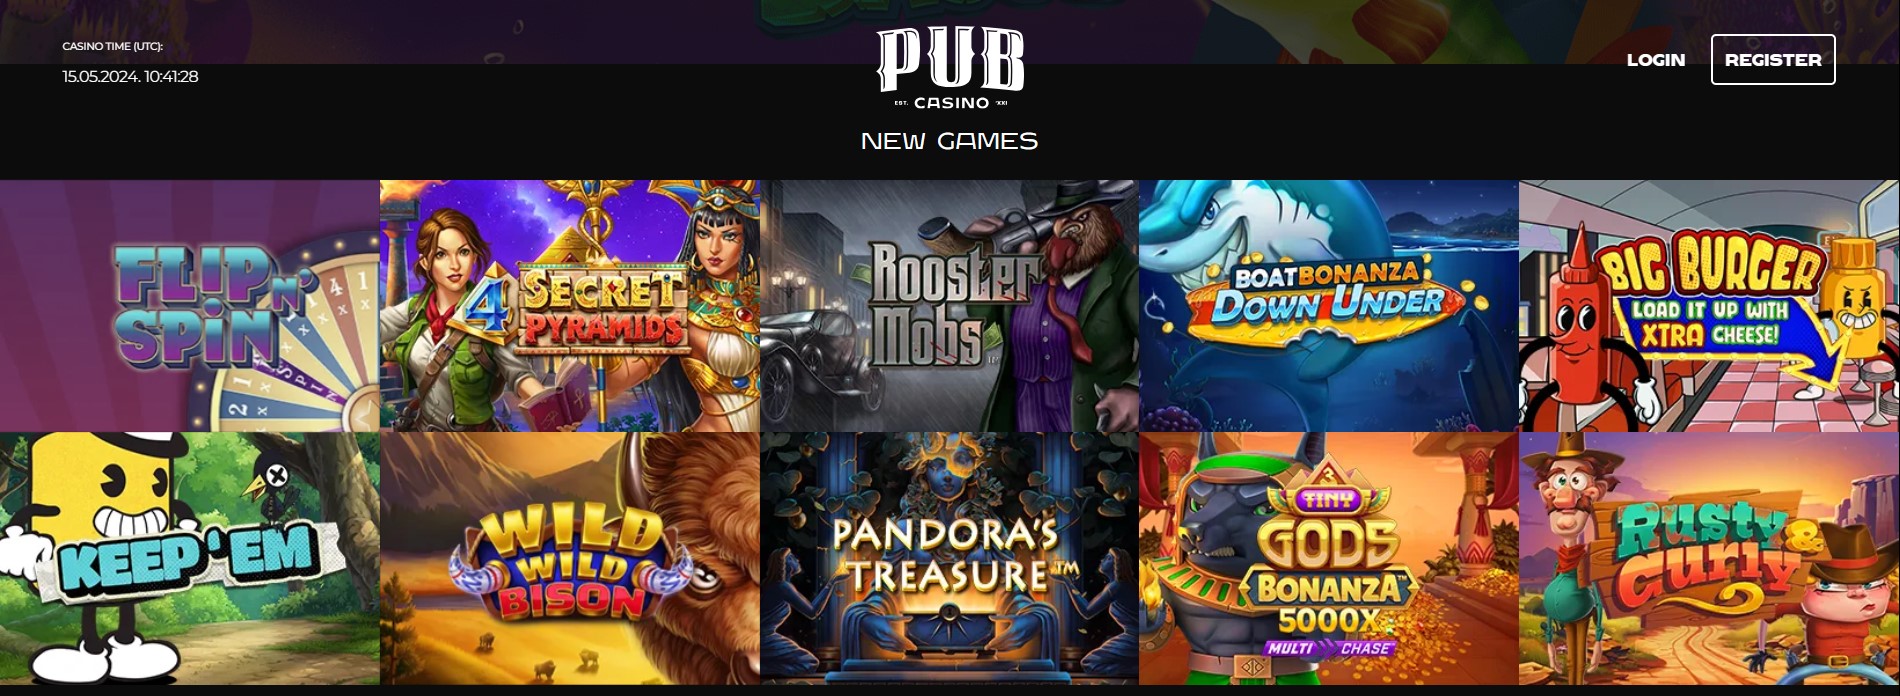 Pub Casino Games Review